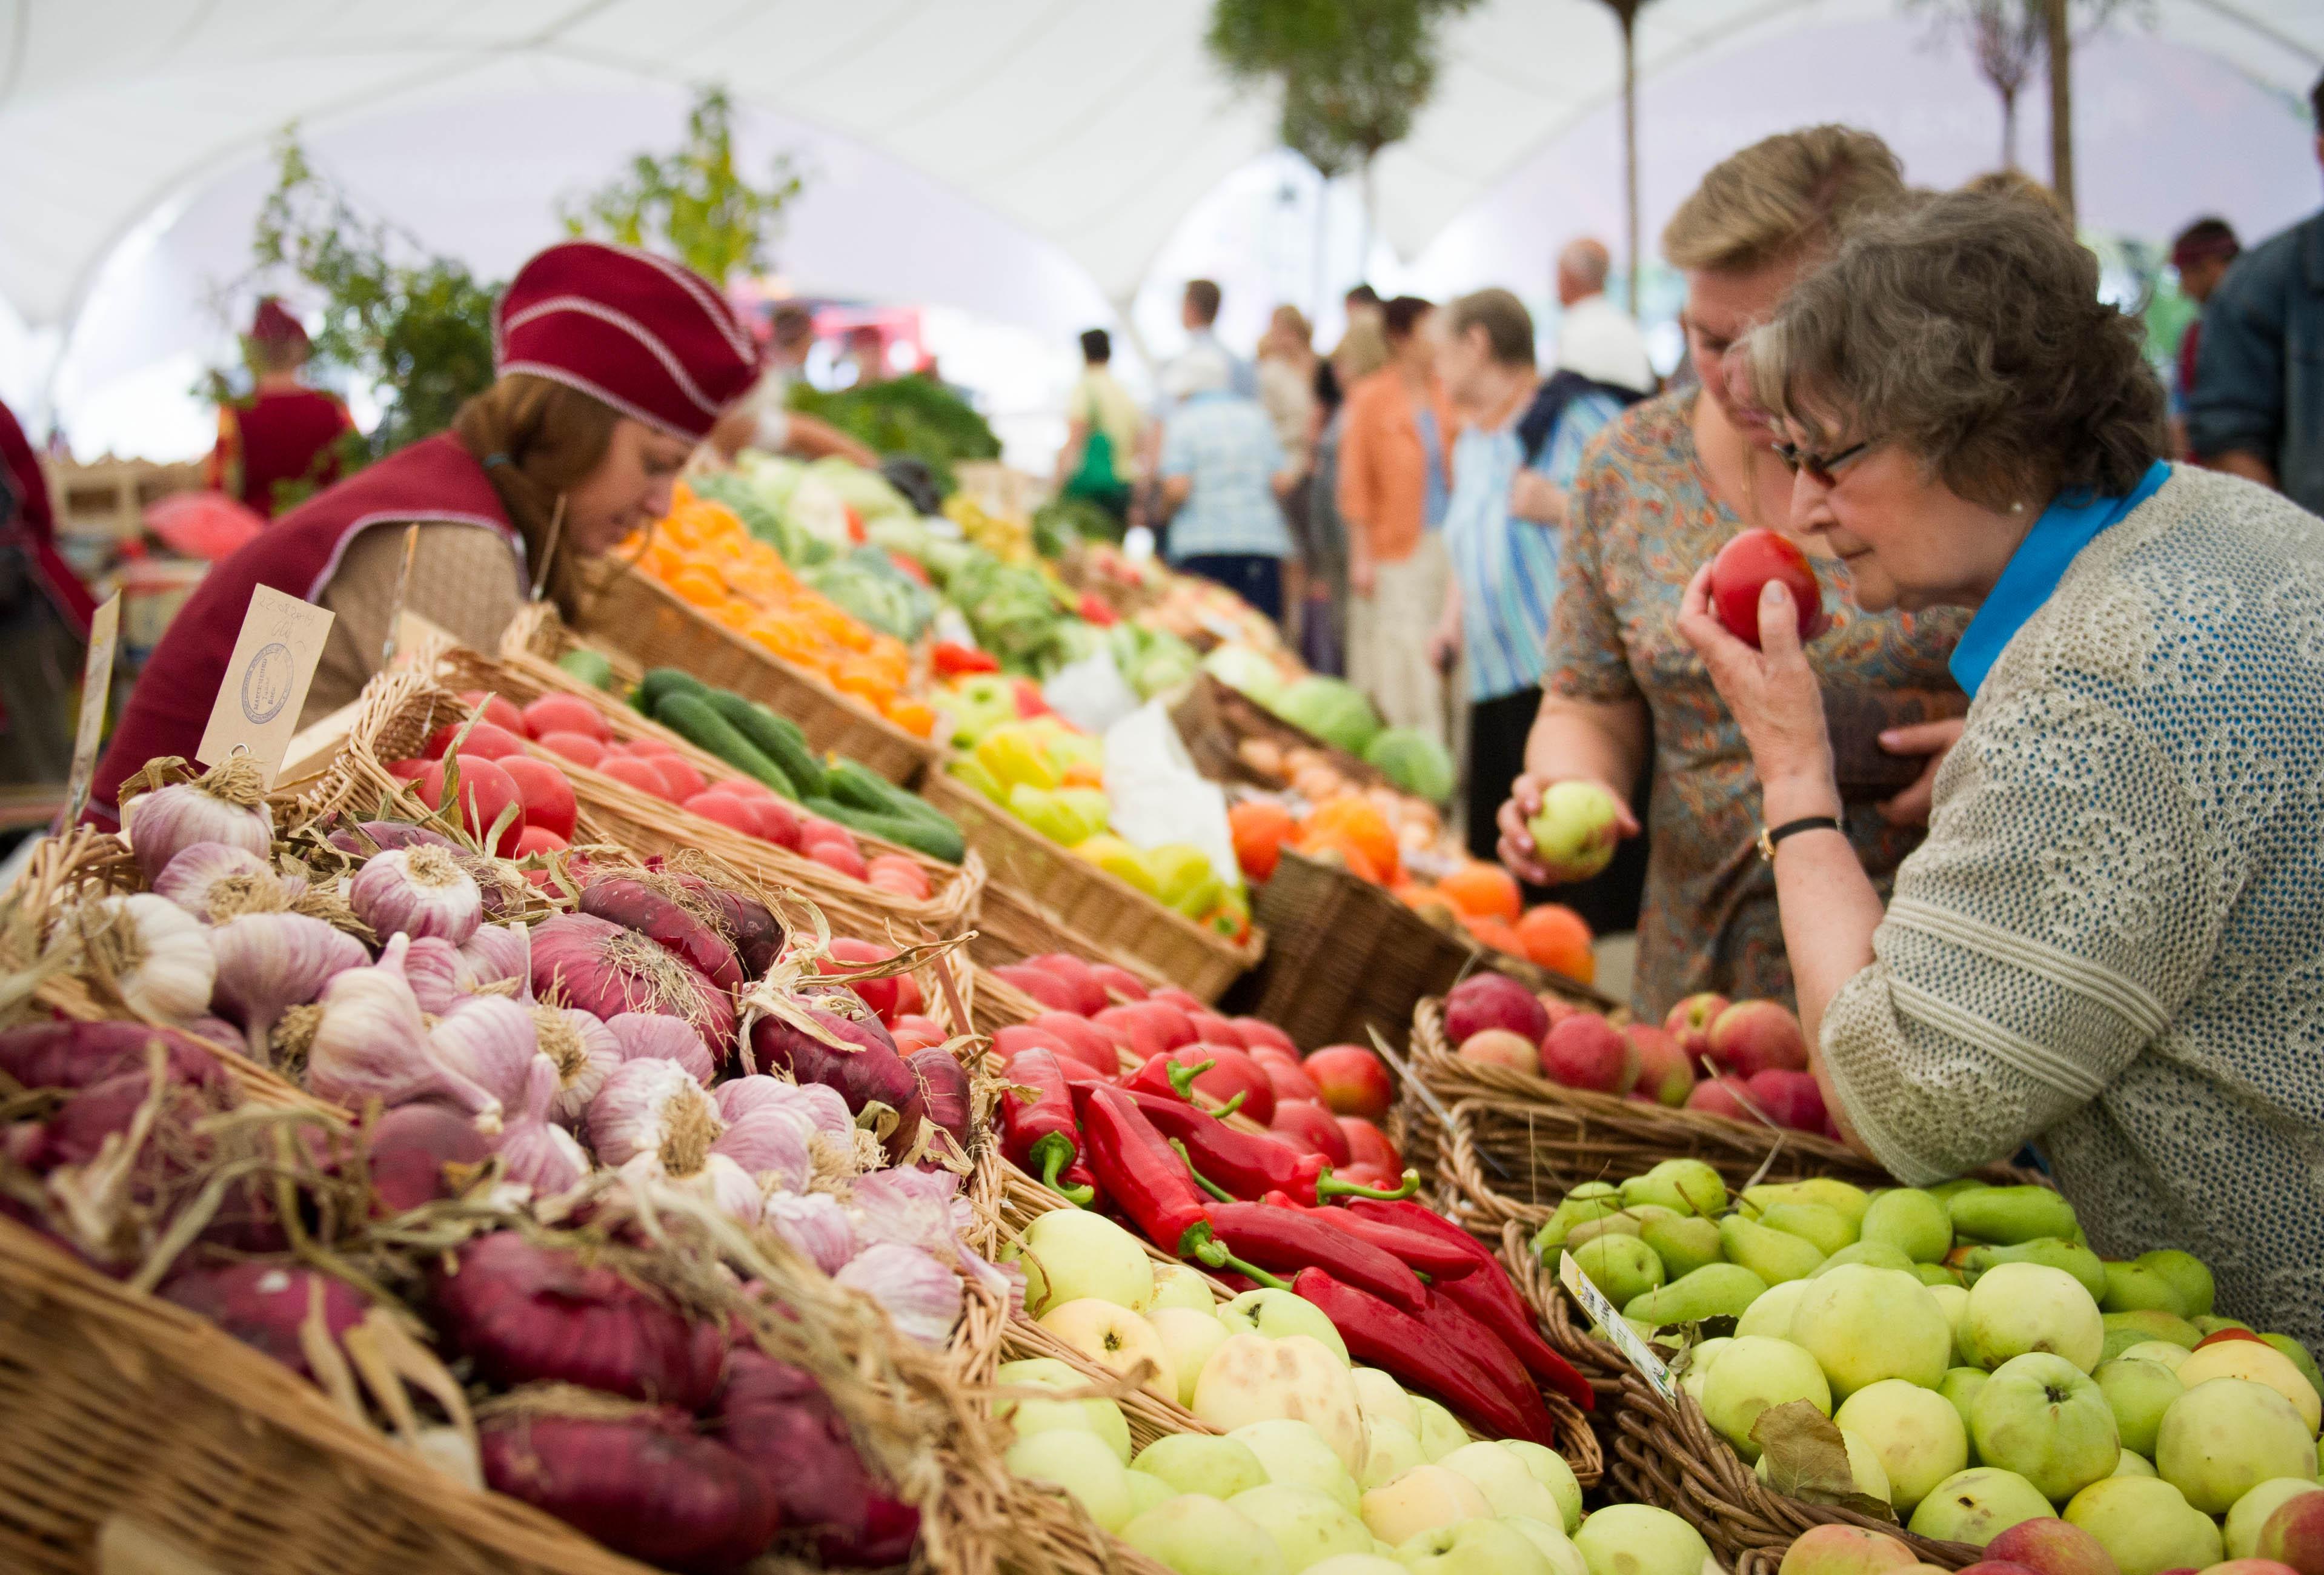 La piaţă a crescut preţul unor legume şi fructe